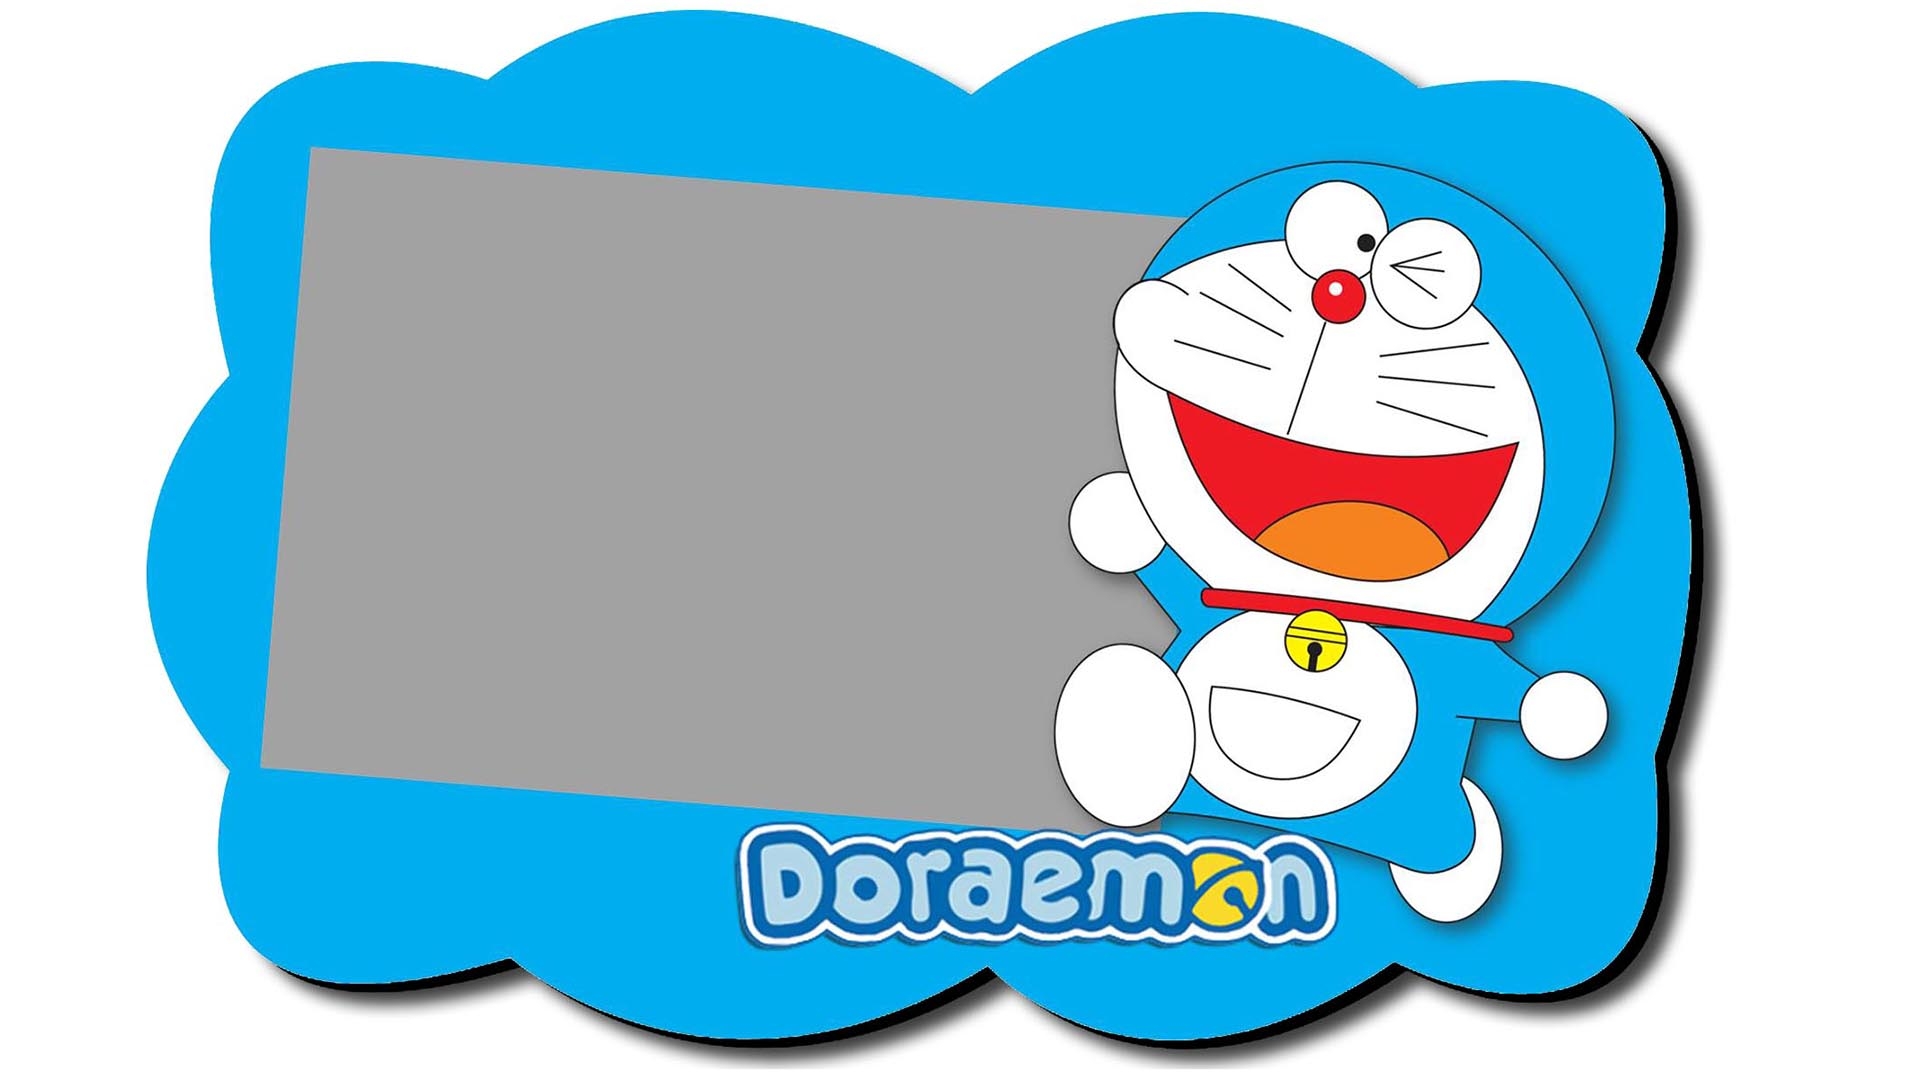 Doraemon Wallpapers - WallpaperSafari